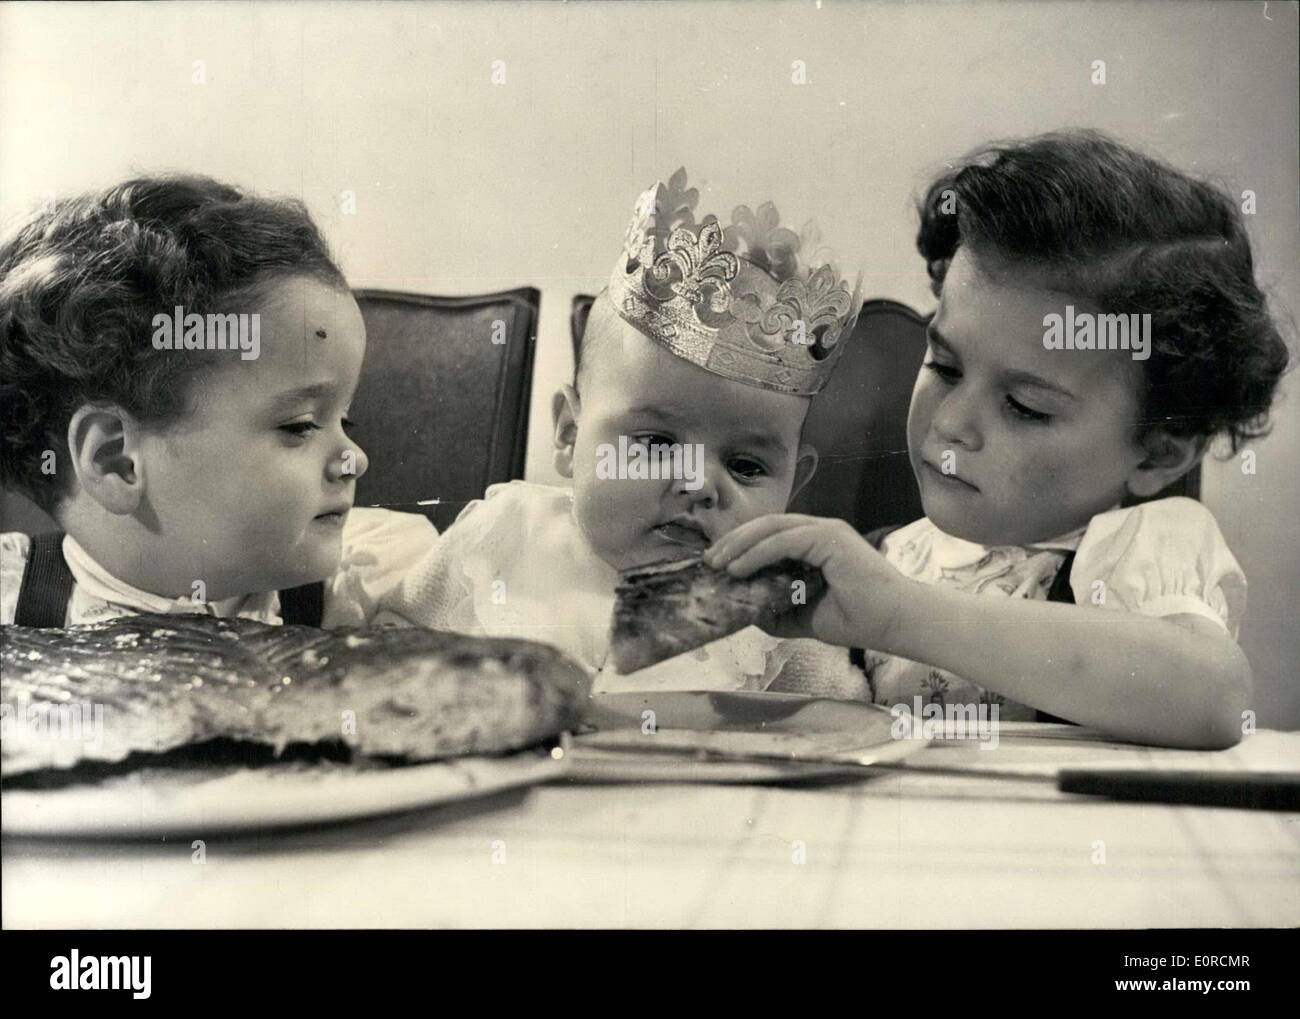 4. Januar 1959 - bereit für Epiphany: 1-Year-Old Michael Seems zu bewundern die traditionellen Apiphany Kuchen serviert durch seine kleinen Schwestern während ein kleinen Bruder schaut. Stockfoto